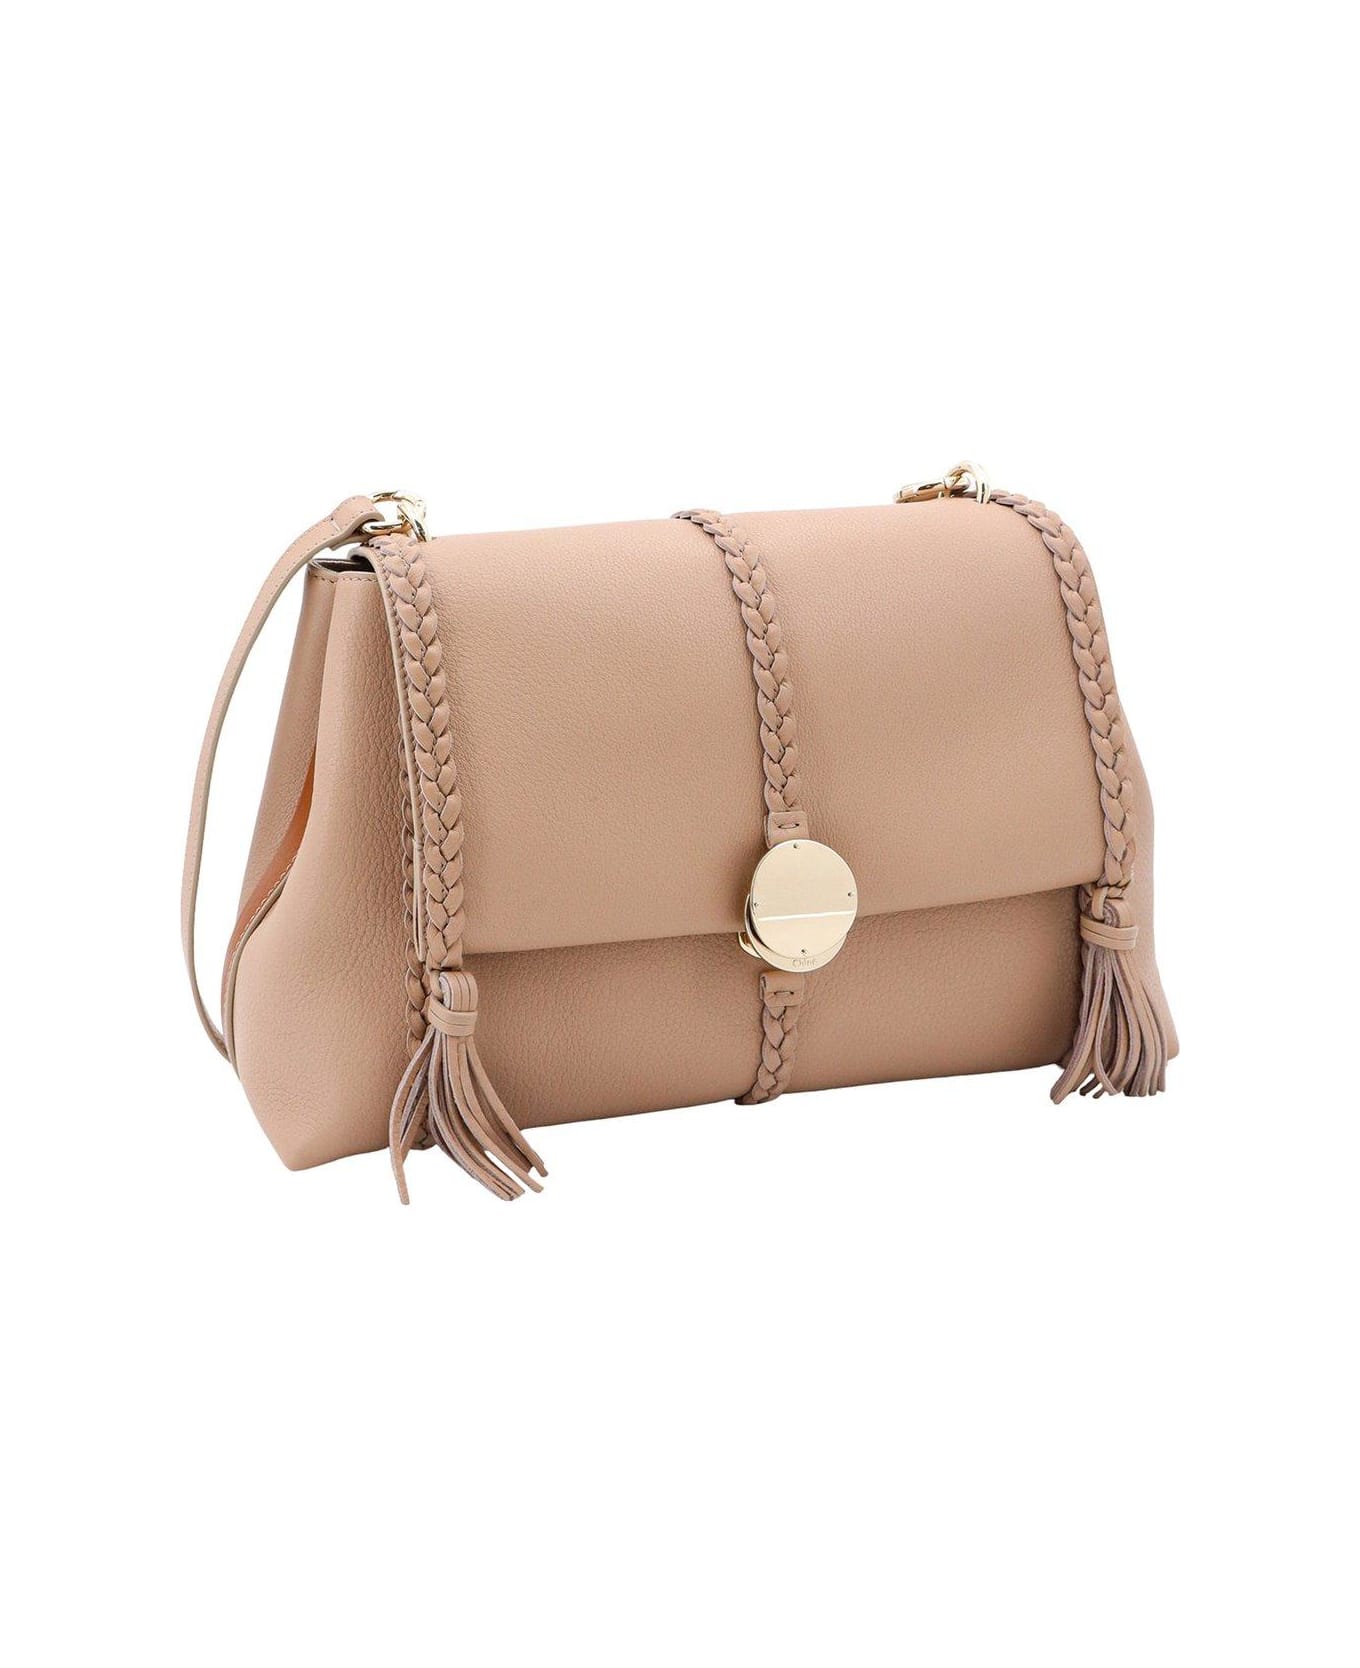 Chloé Penelope Medium Shoulder Bag - Nomad beige